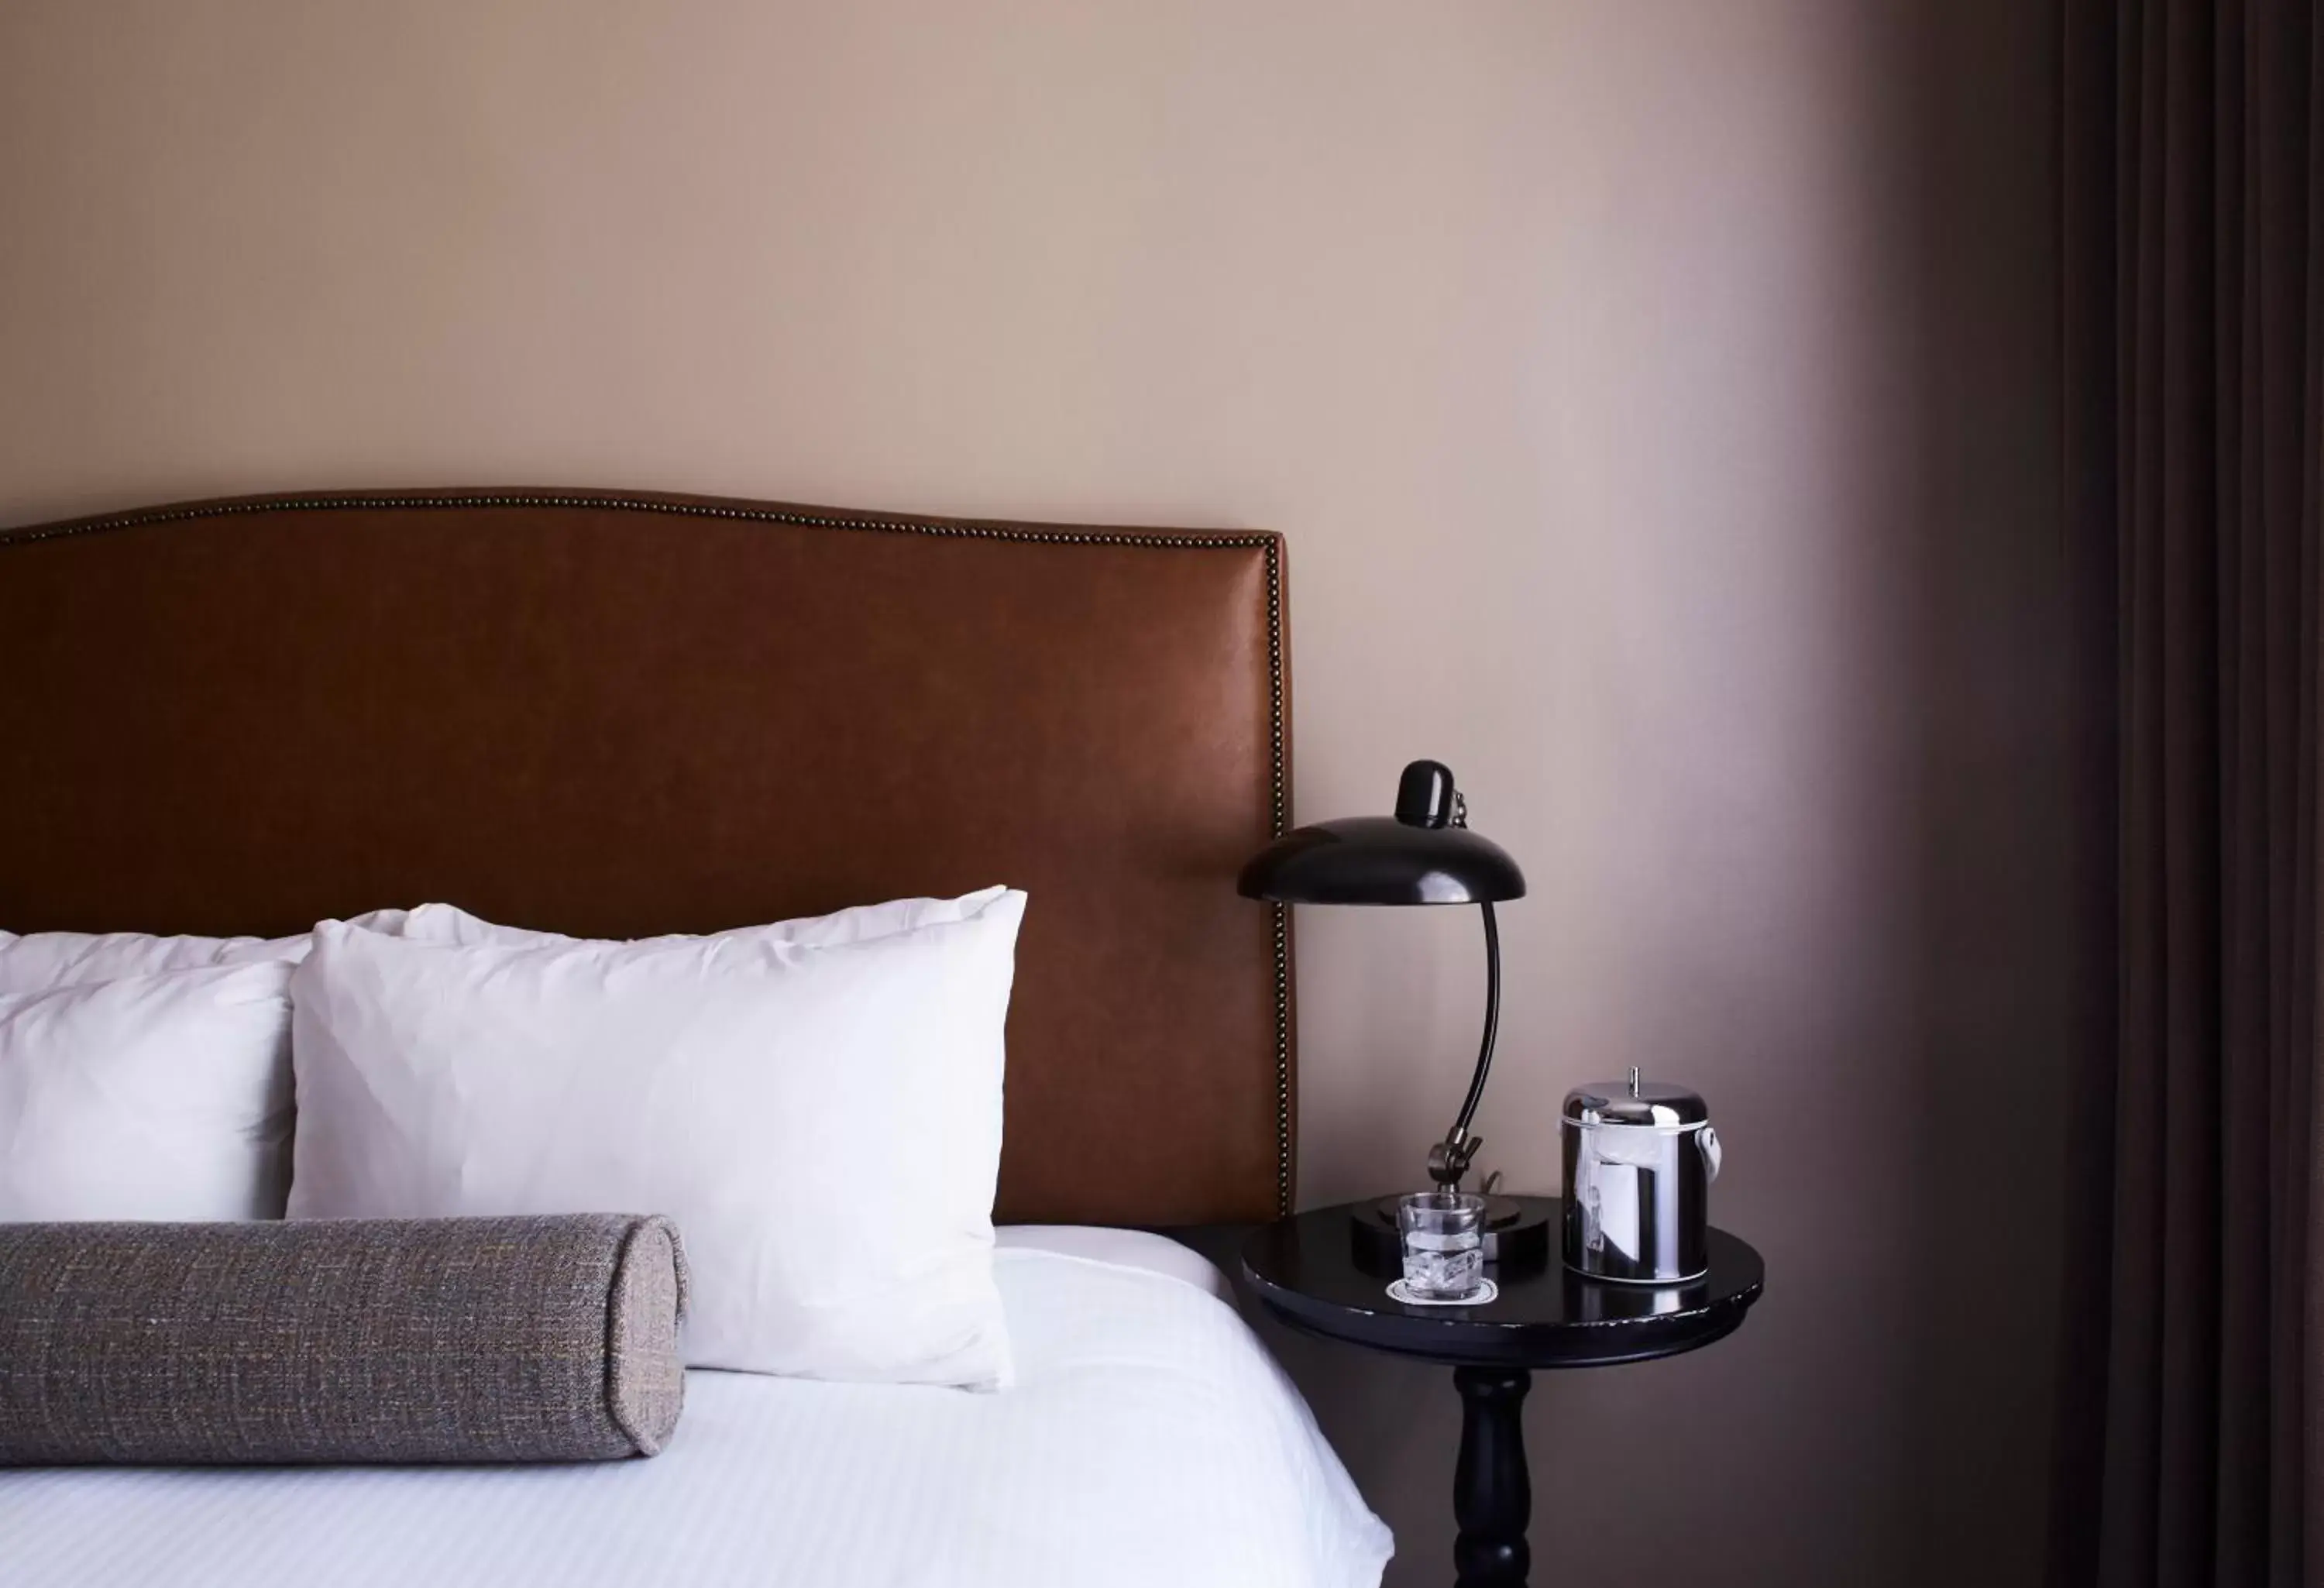 Bed in Hotel Normandie - Los Angeles